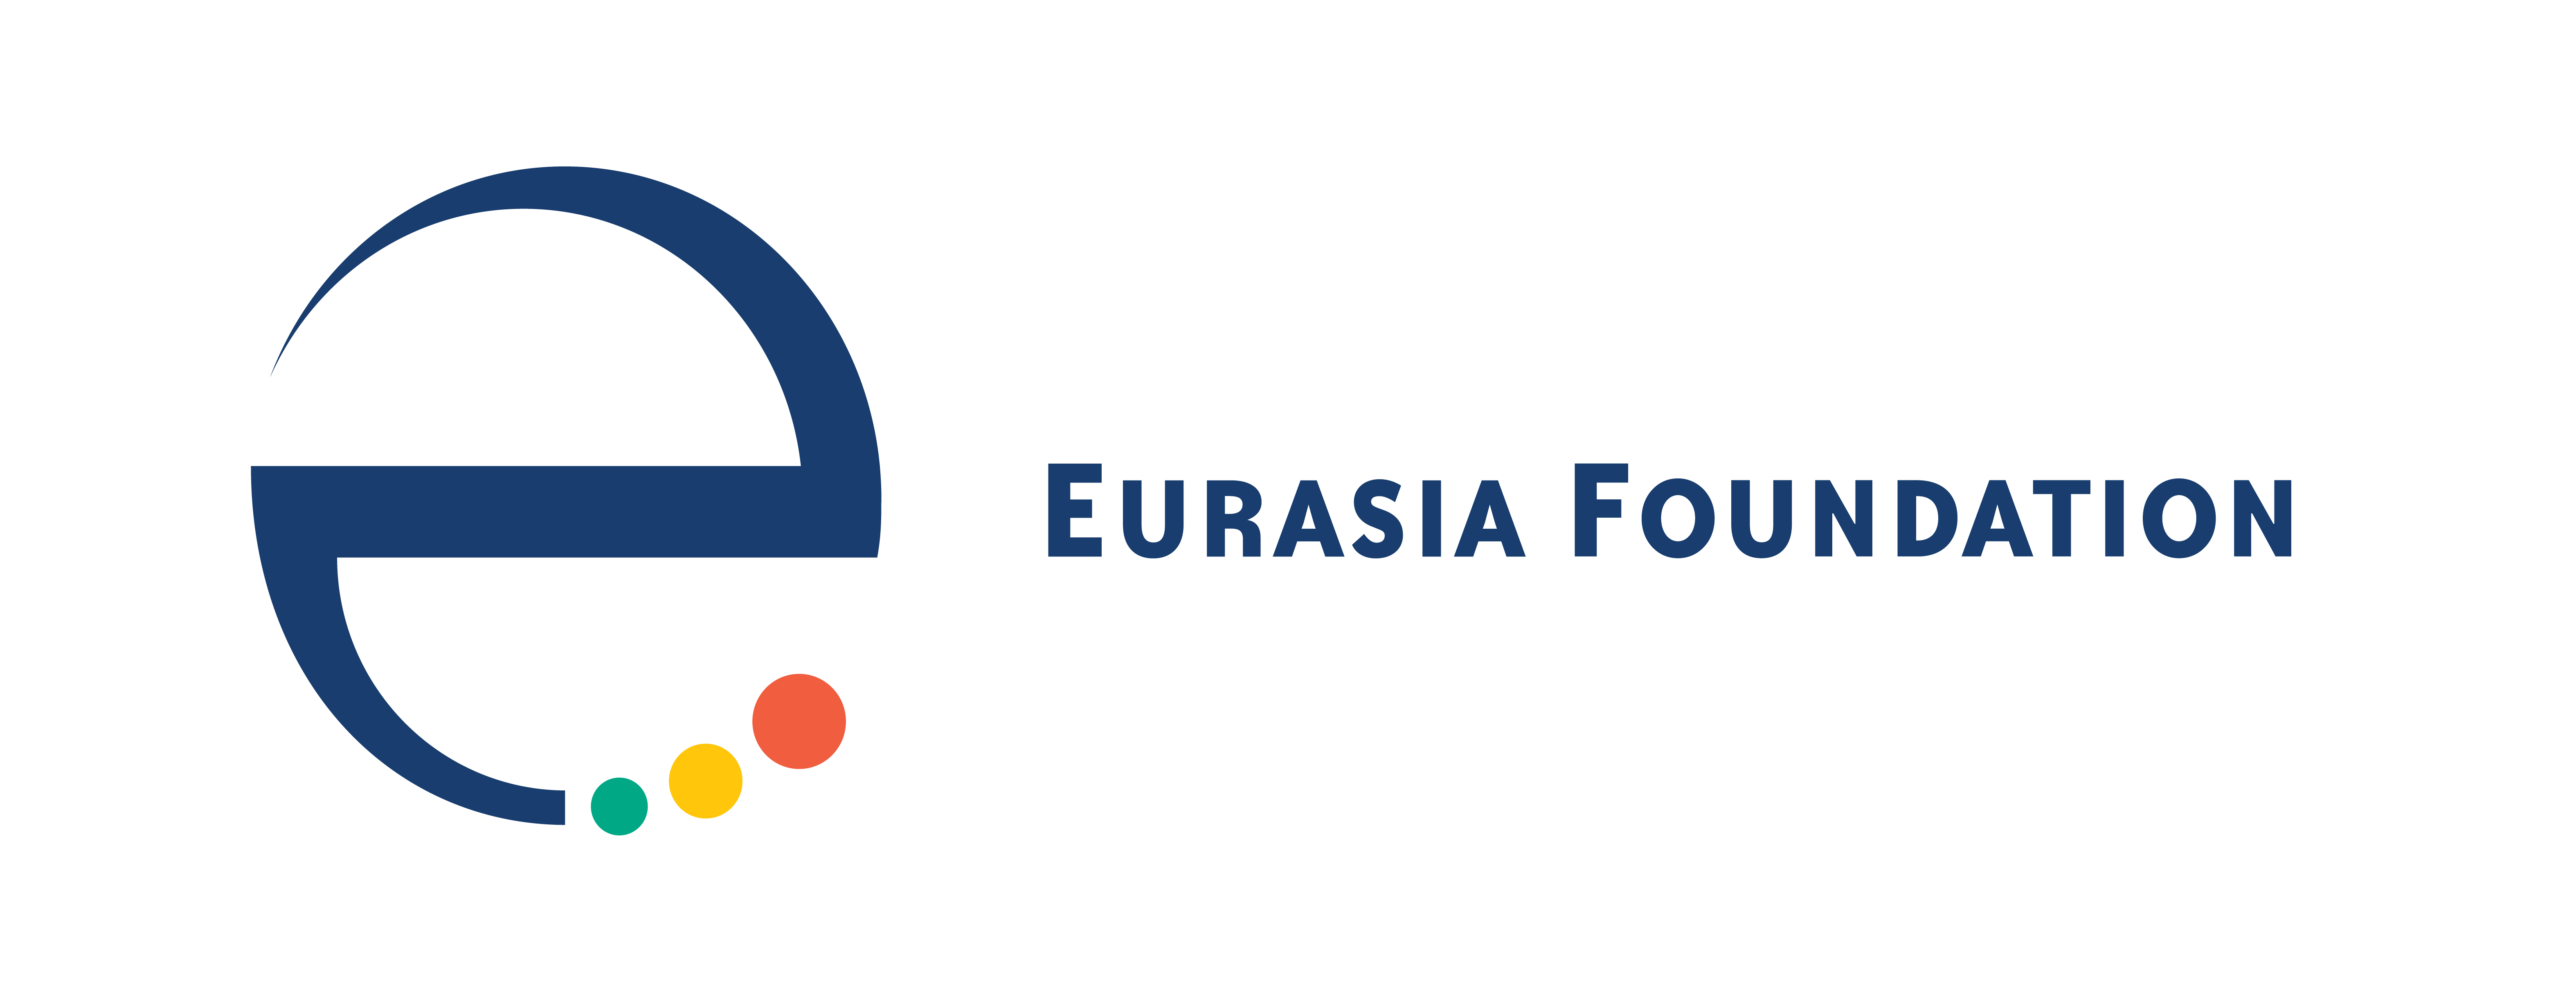 https://www.eurasia.org/